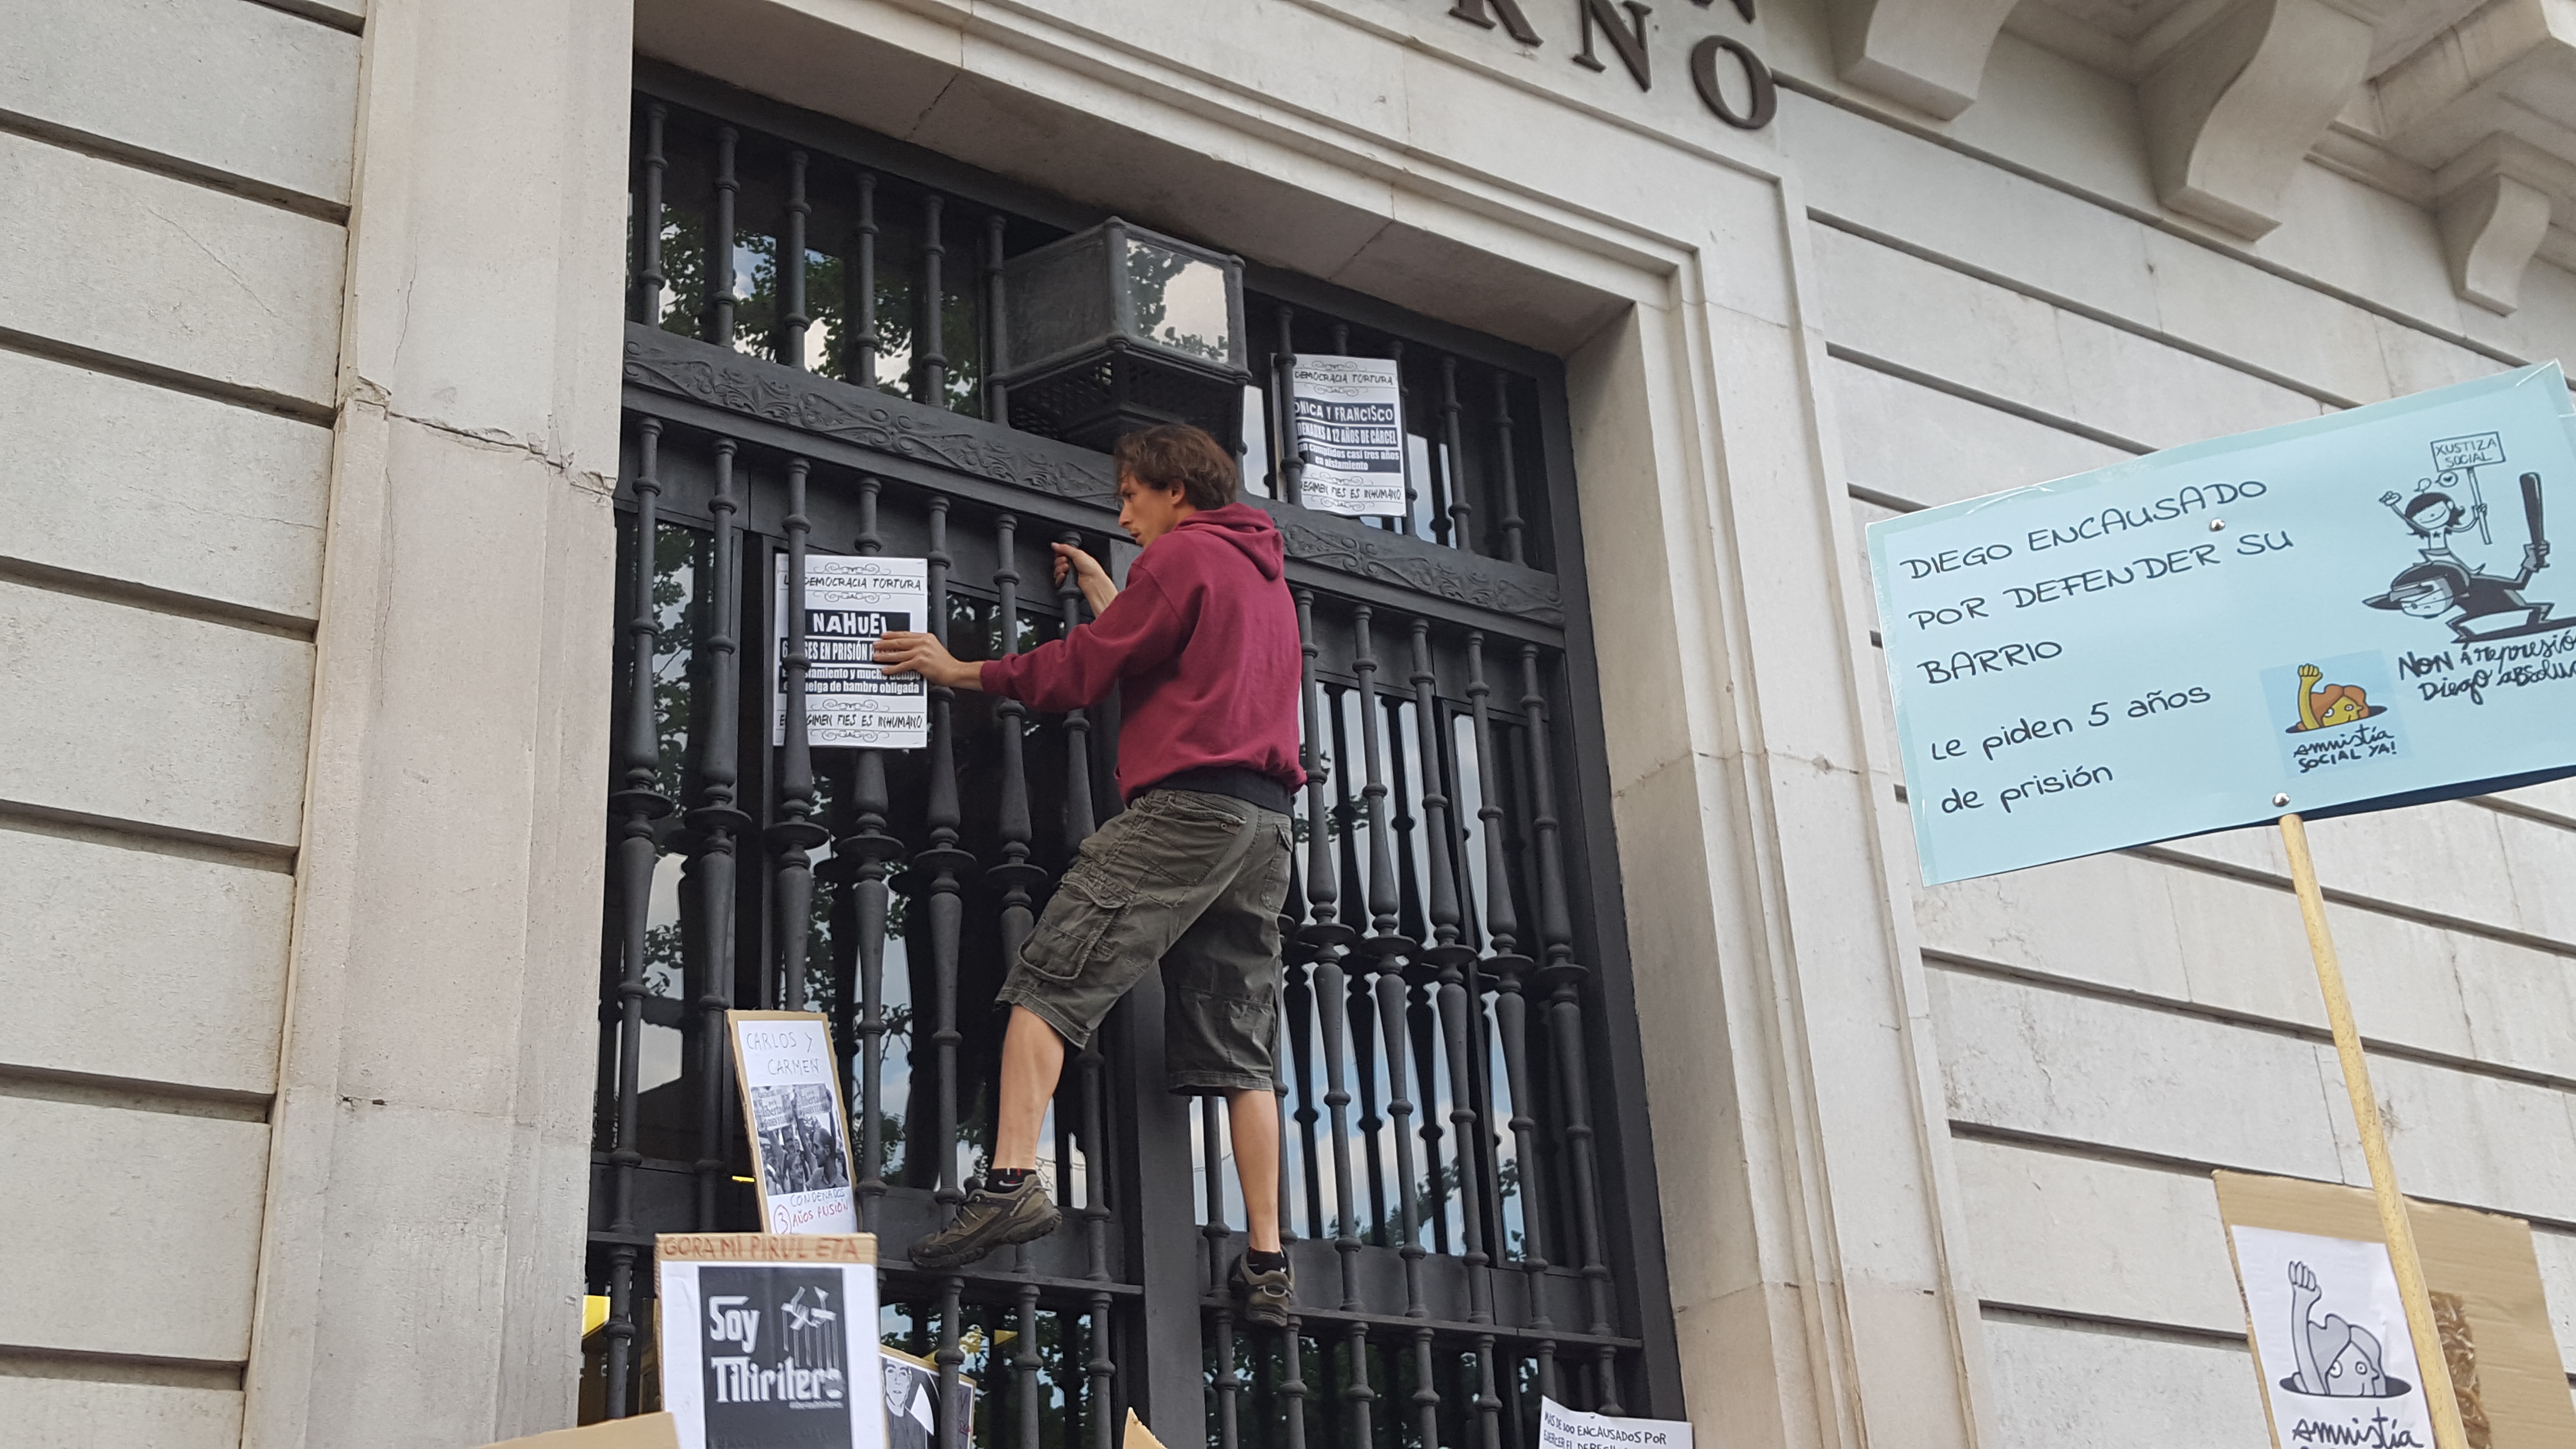 El pasado mes de mayo, un joven fue identificado y multado por colocar pancartas en la Delegación de Gobierno de Santander.